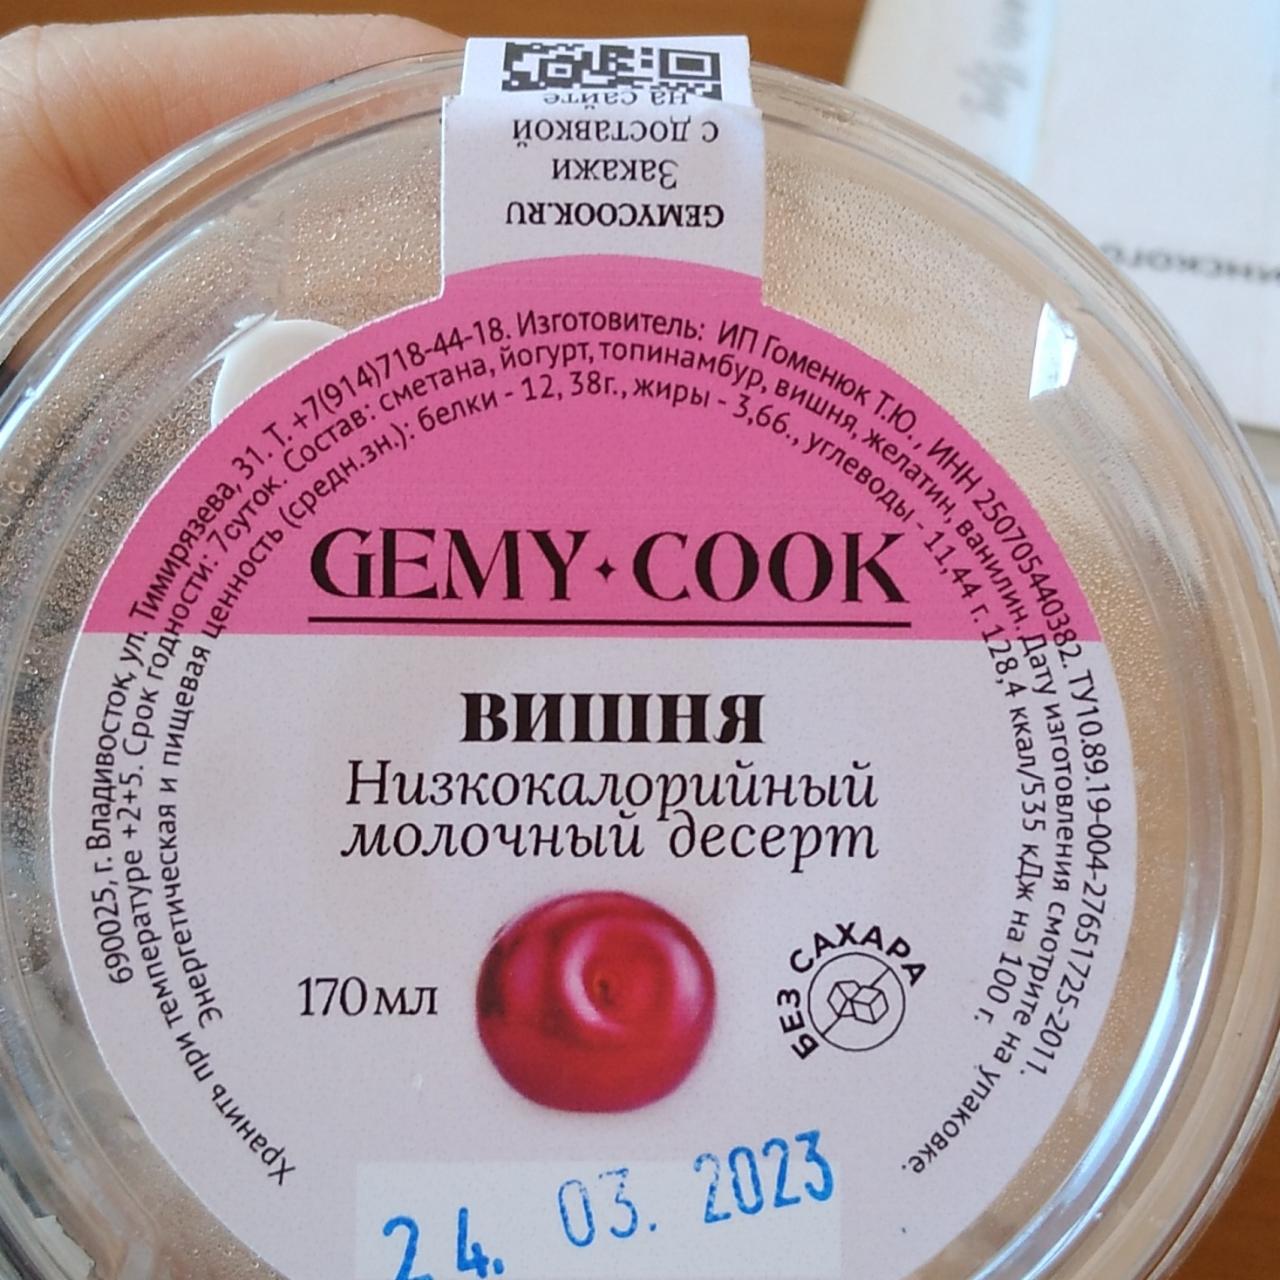 Фото - Низкокалорийный молочный десерт вишня Gemy-cook